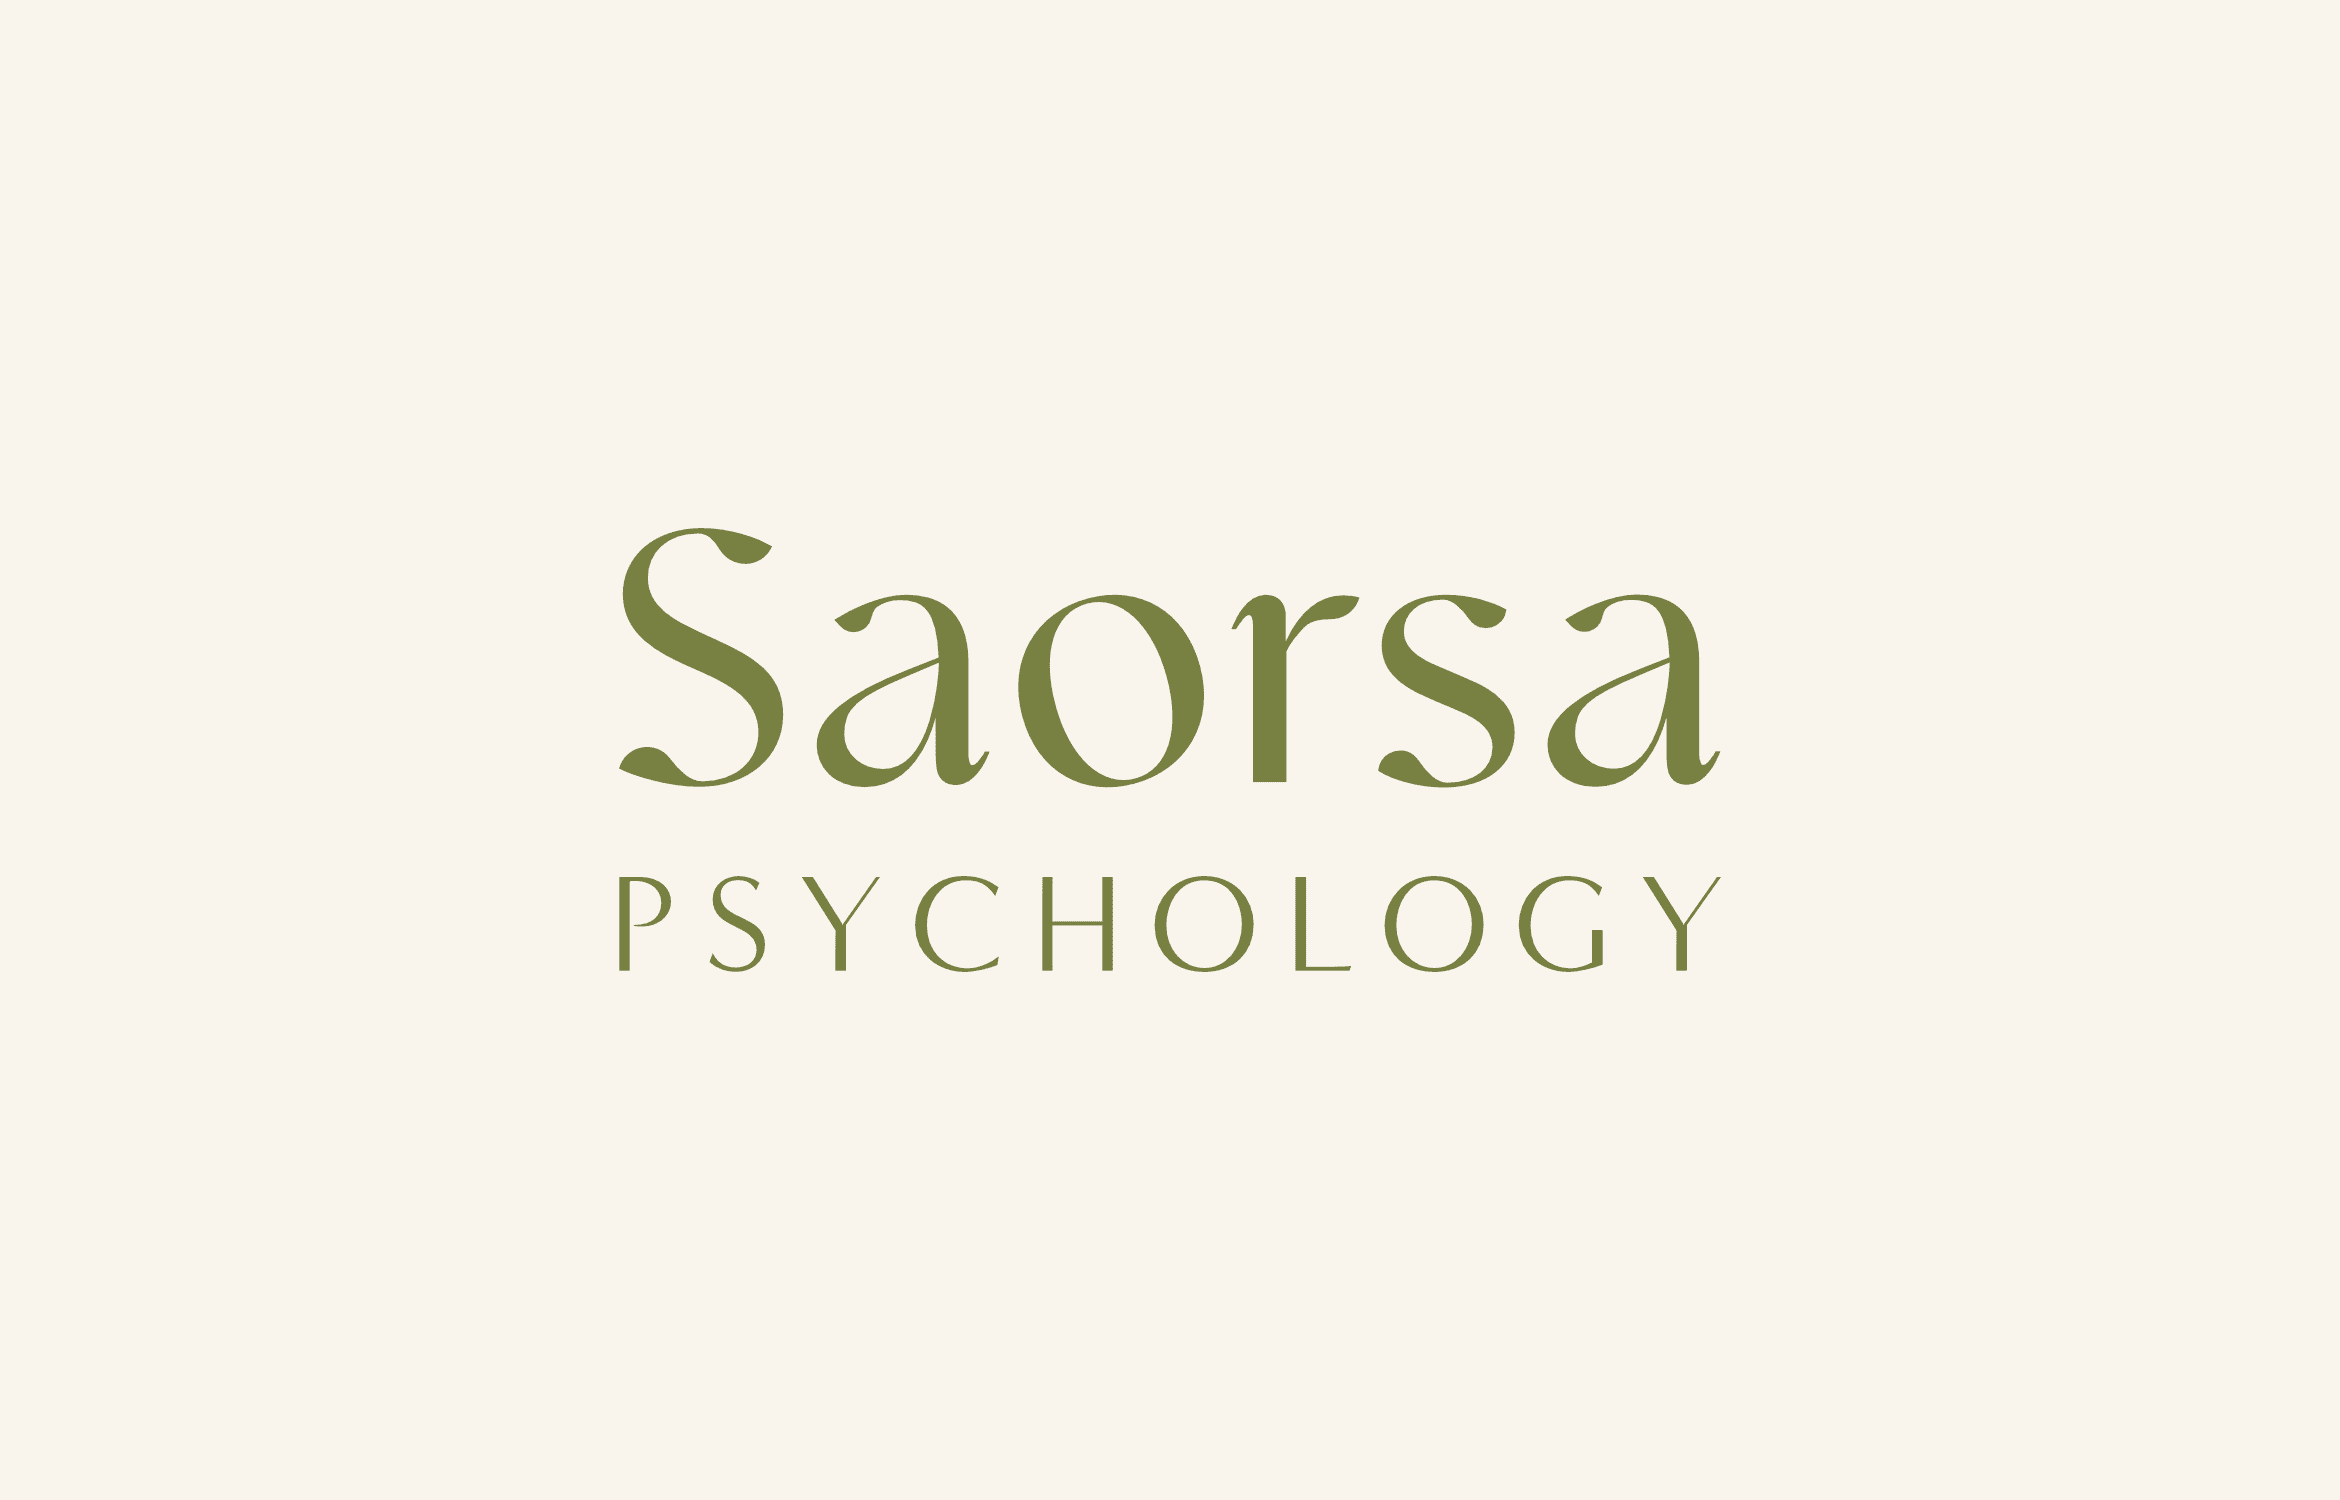 Saorsa Psychology podcast sponsor